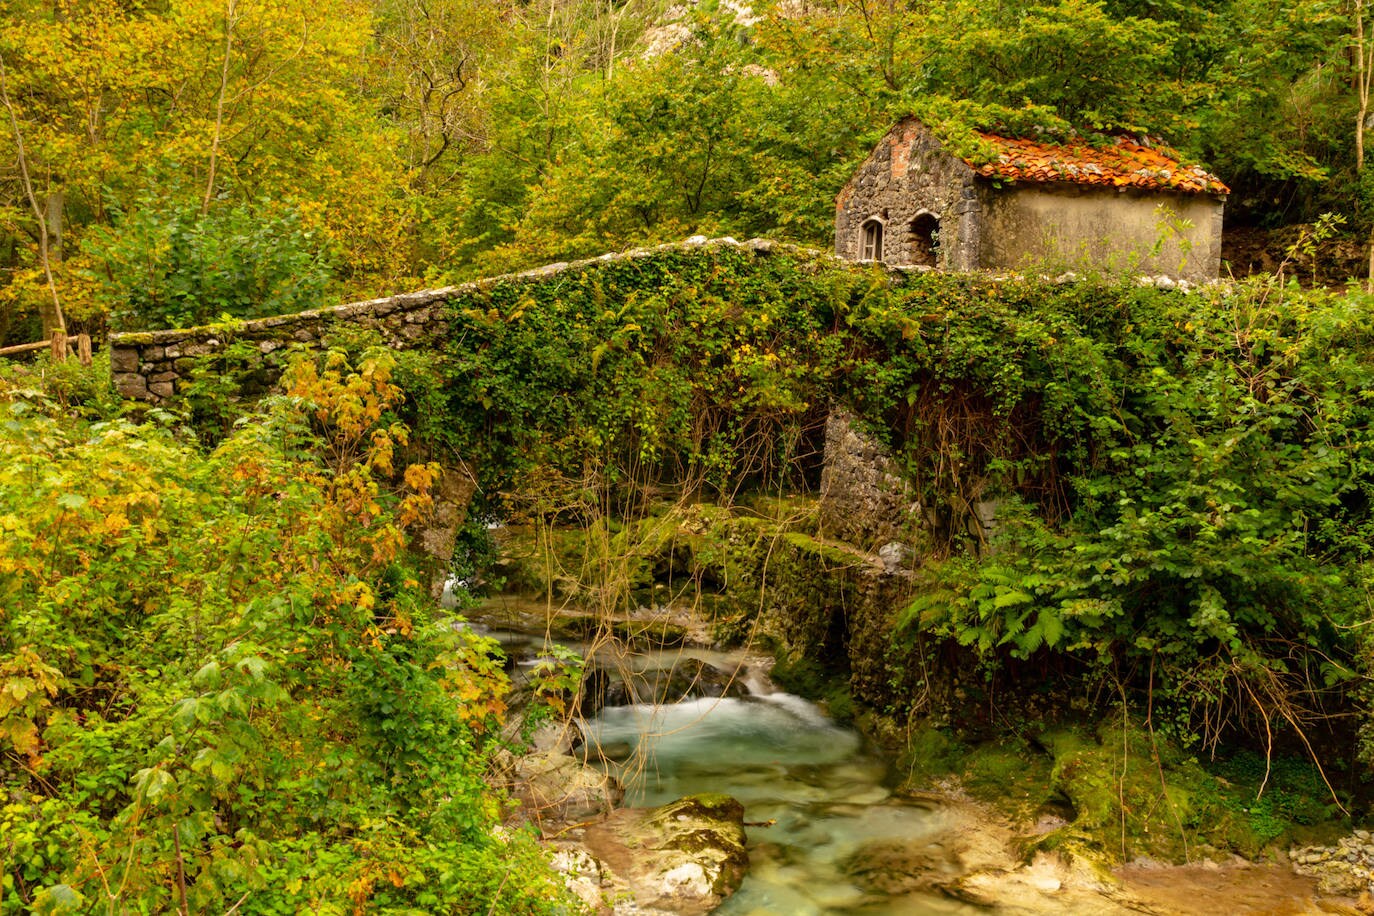 Tielve (Asturias)